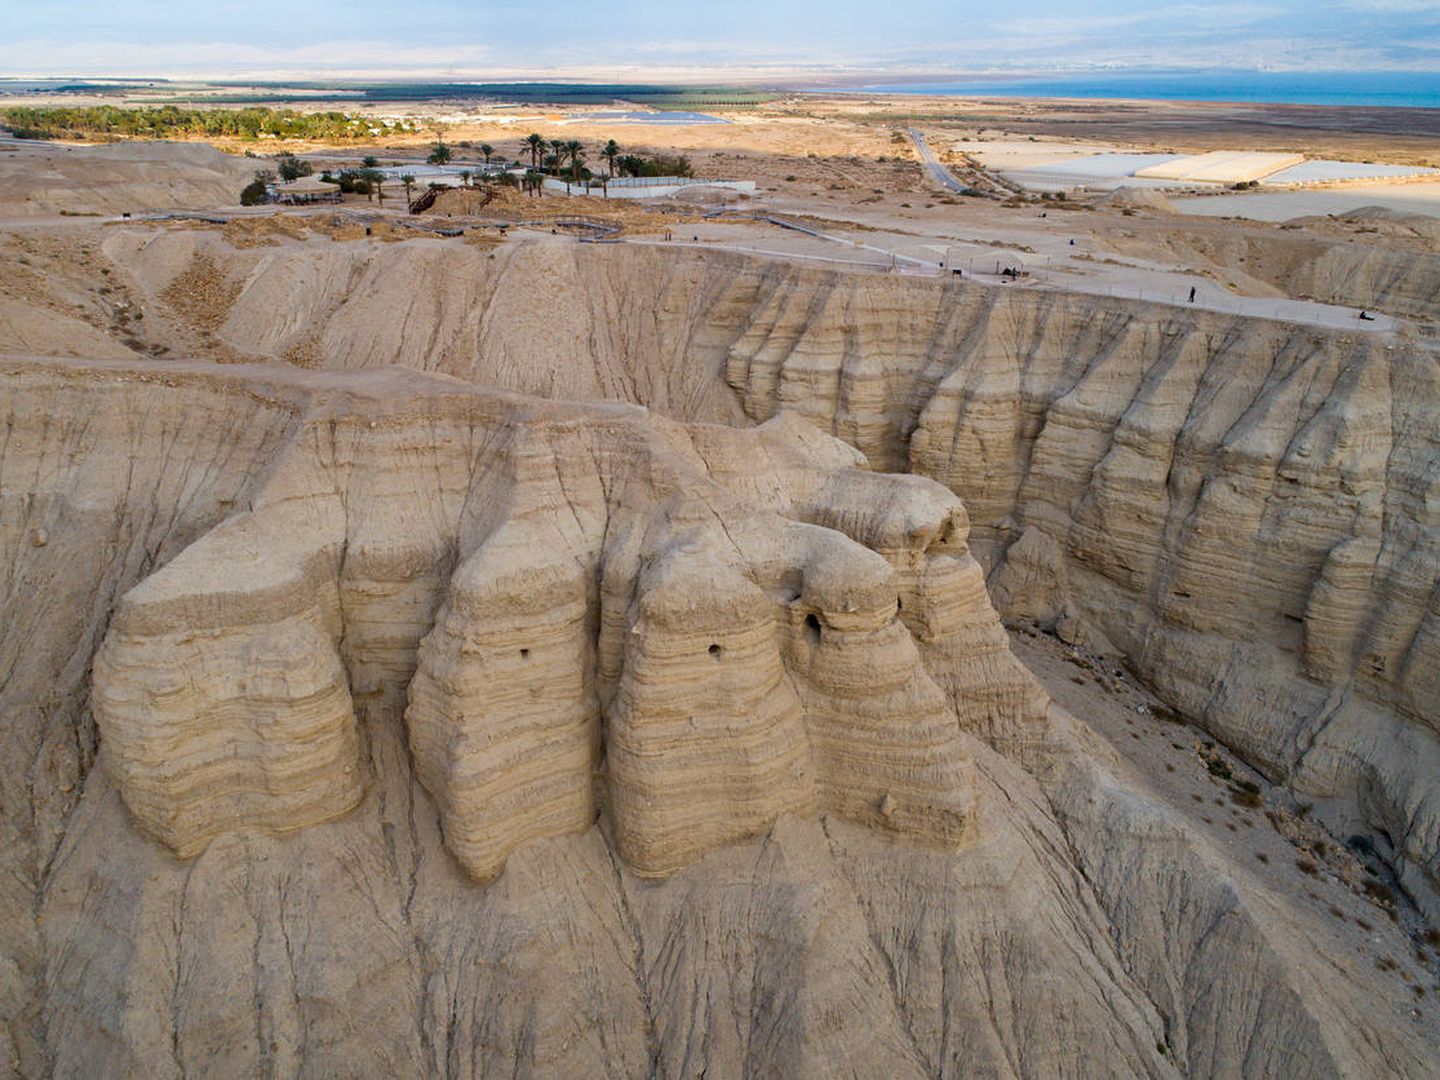 El valle de Qumrán, donde fueron encontrados los restos arqueológicos. (iStock)